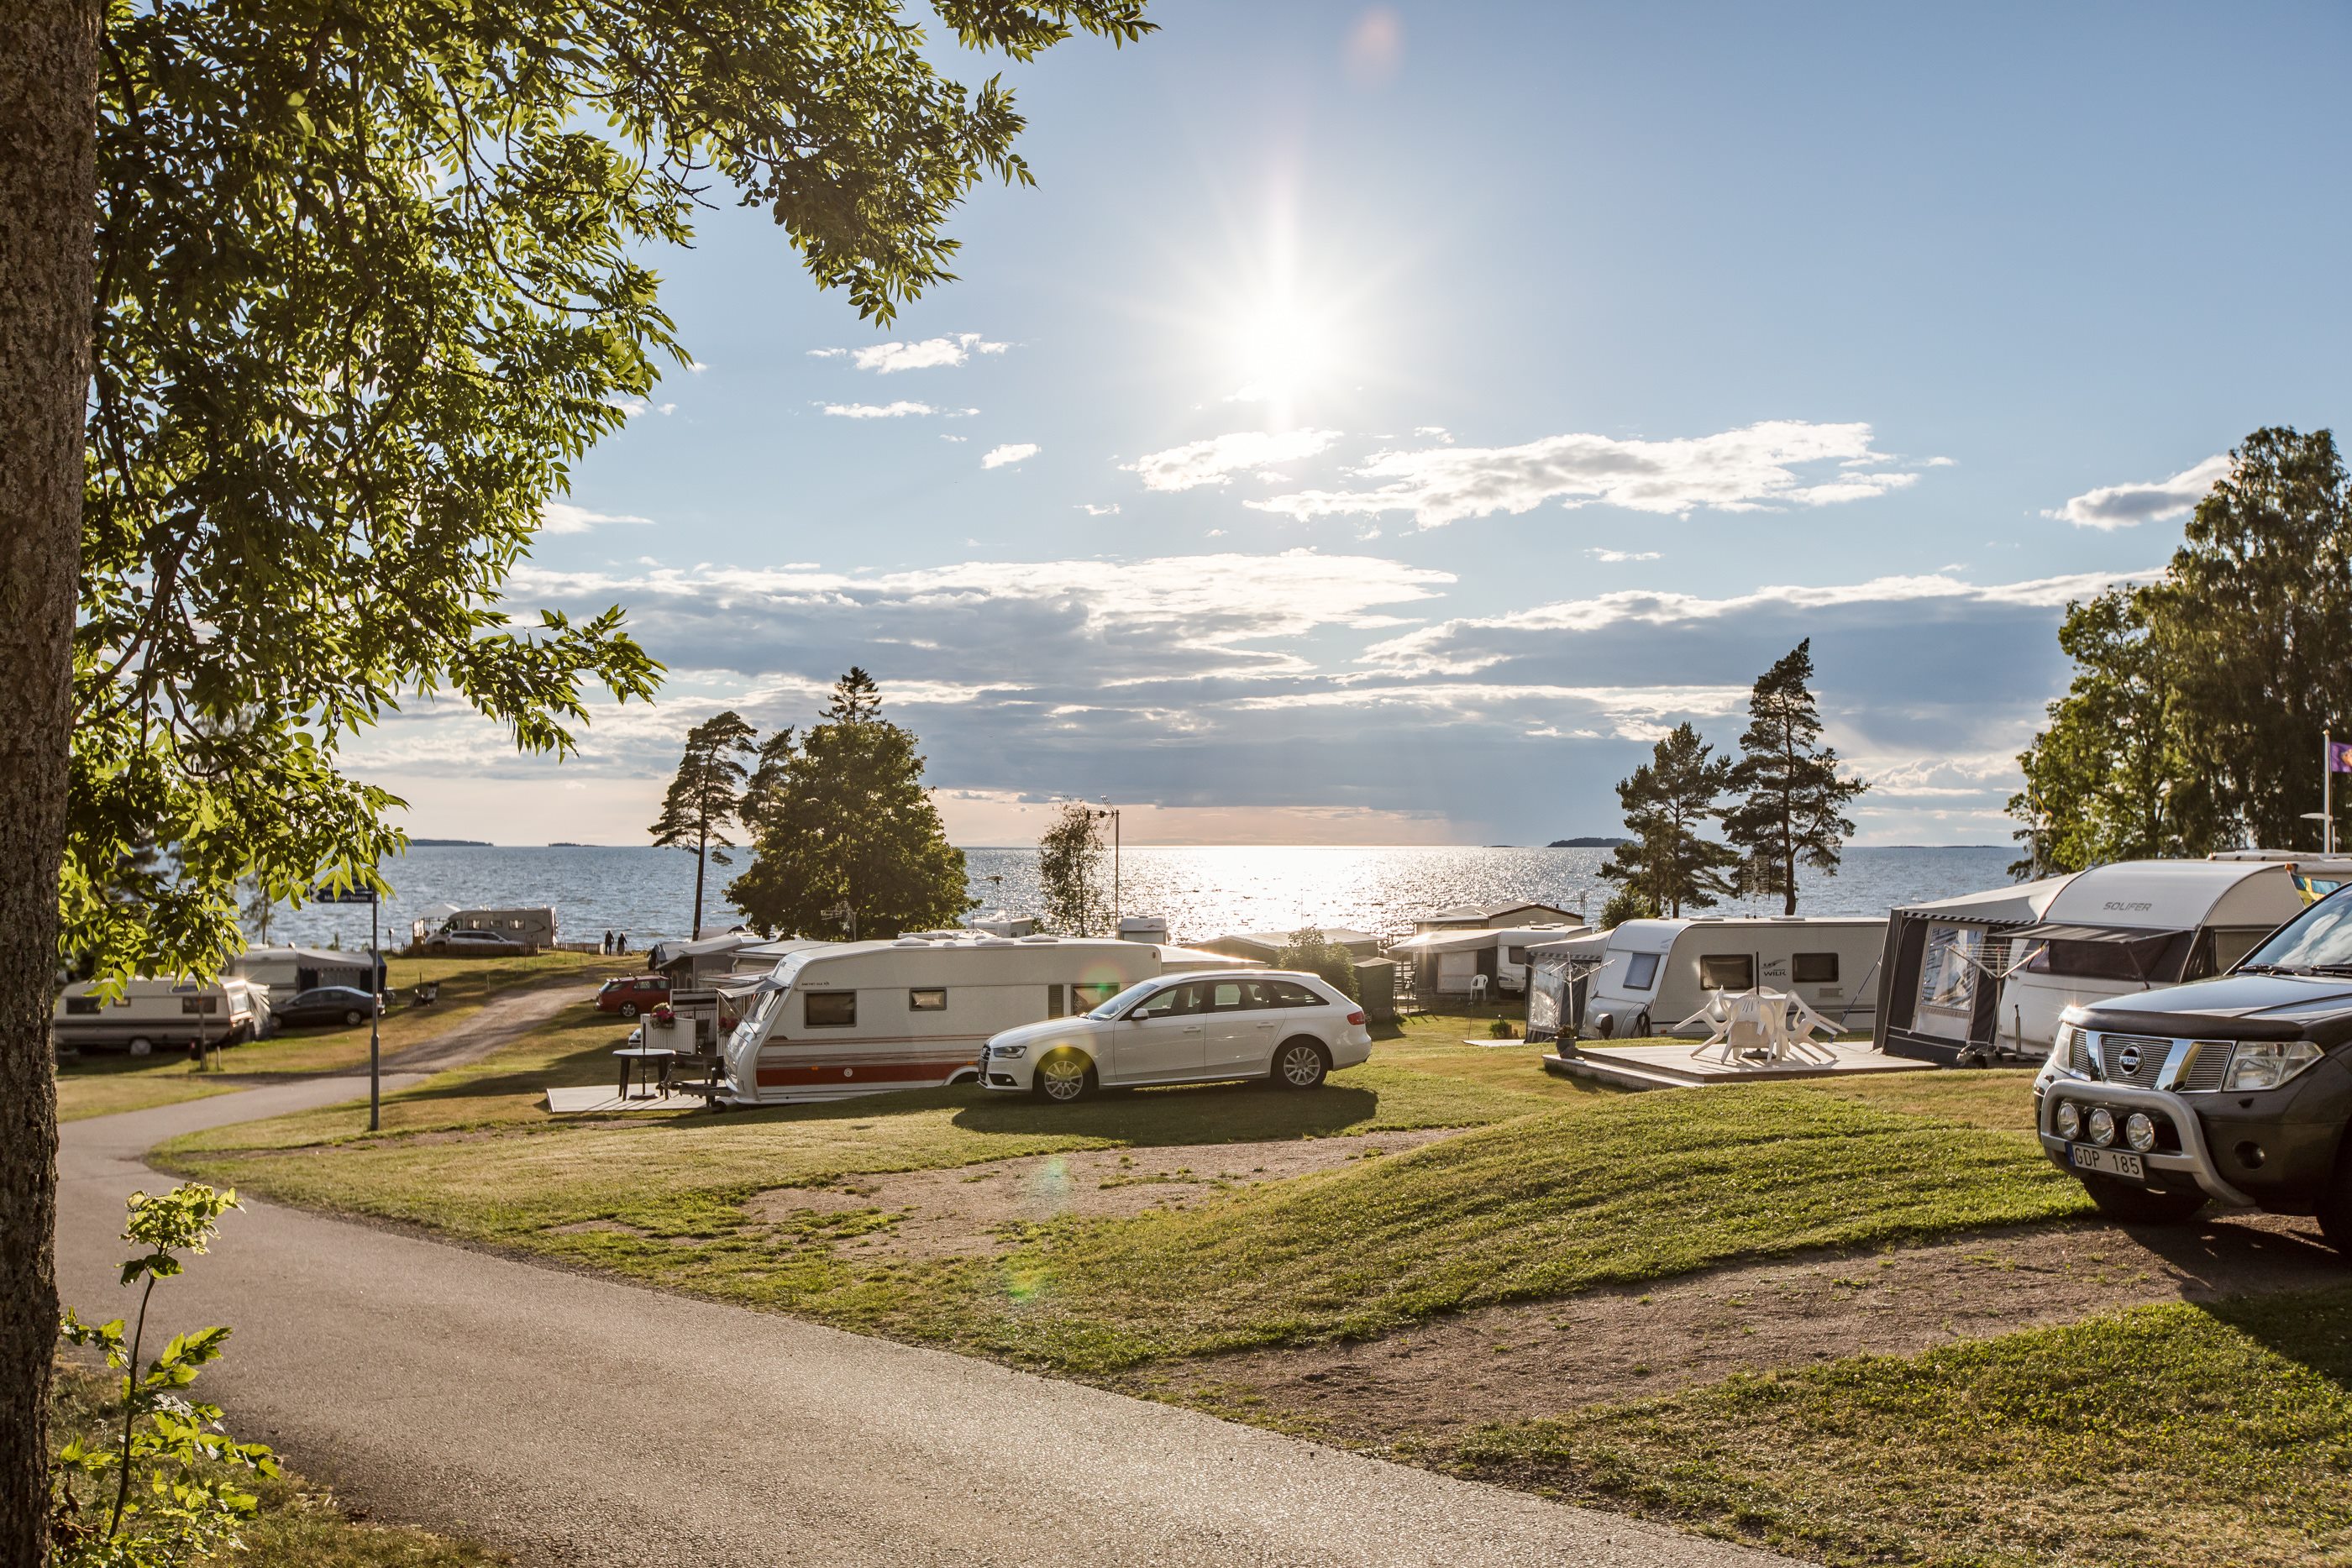 Emplacement de camping caravane/camping-car 80-100 m² avec électricité (zone rouge)